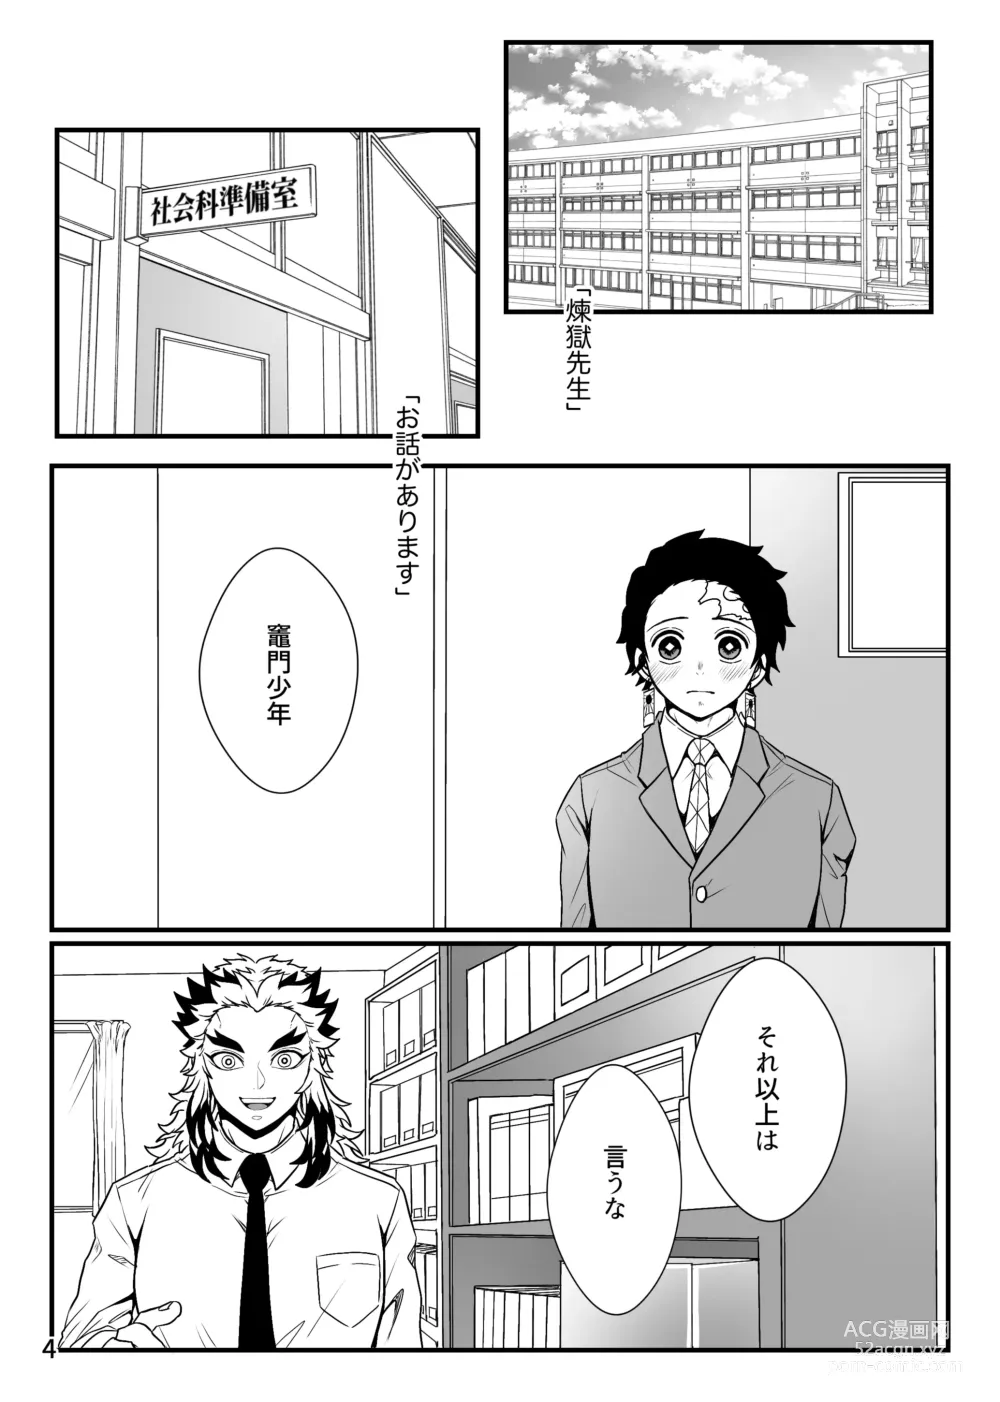 Page 4 of doujinshi Kono Gekijou o Shirazu ni